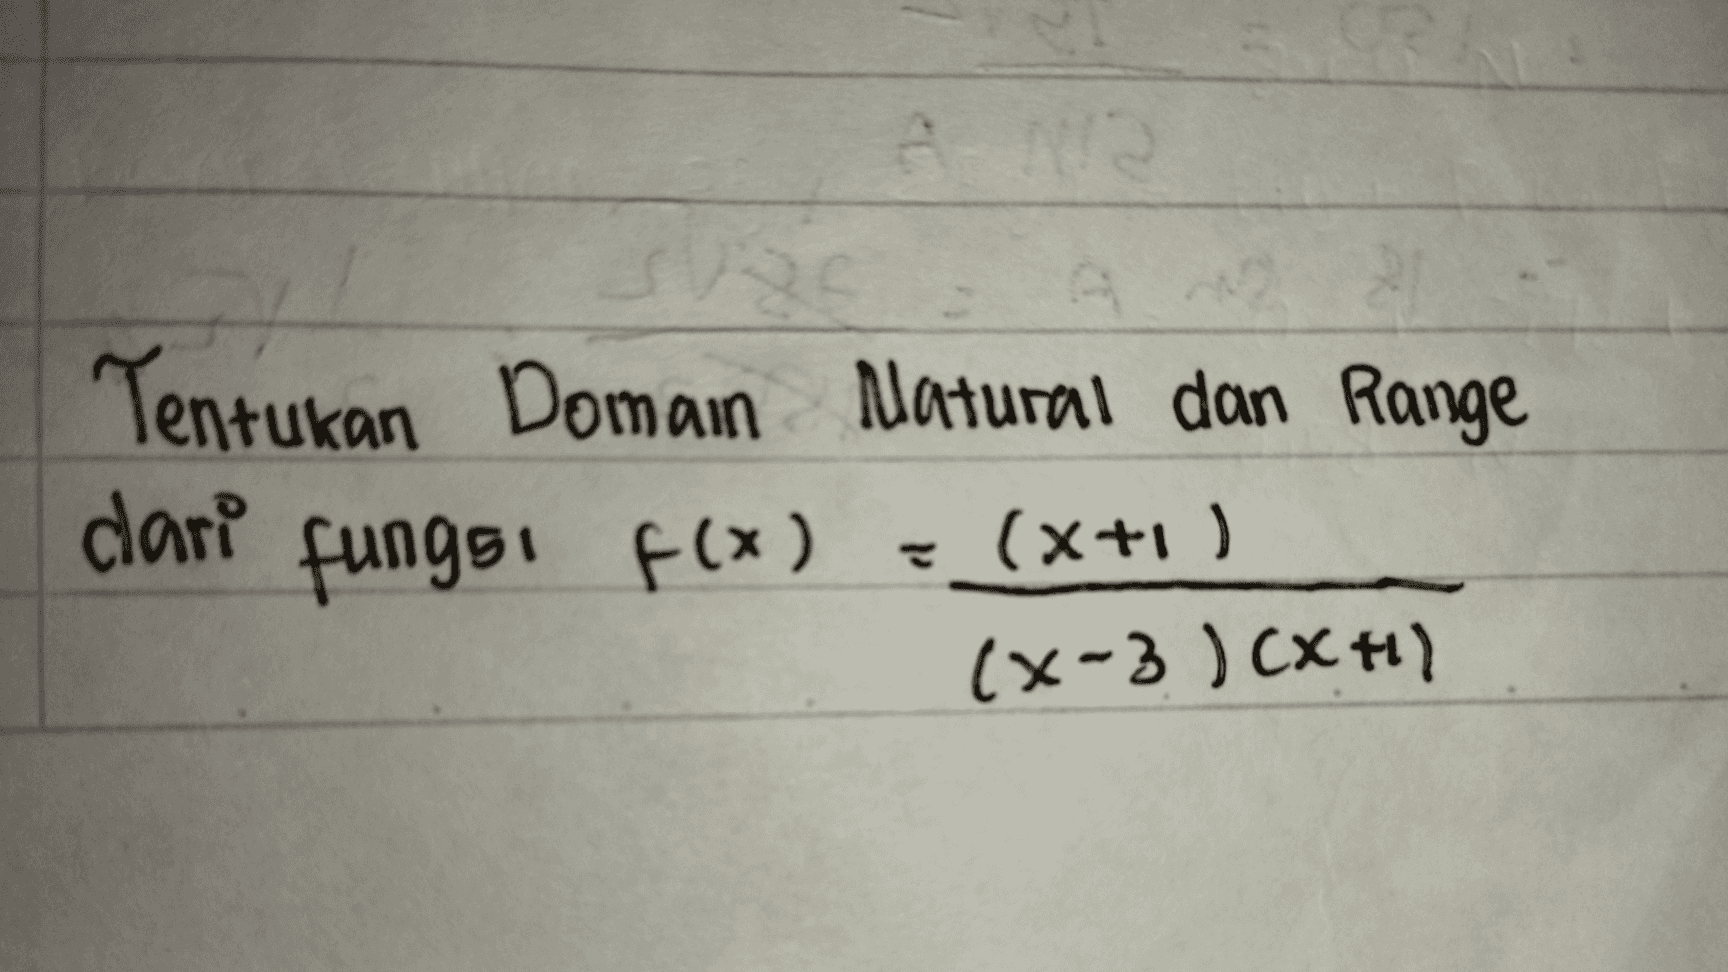 Tentukan Domain Natural dan Range dari fungsi f(x) (x+1) (x-3) CX H) 